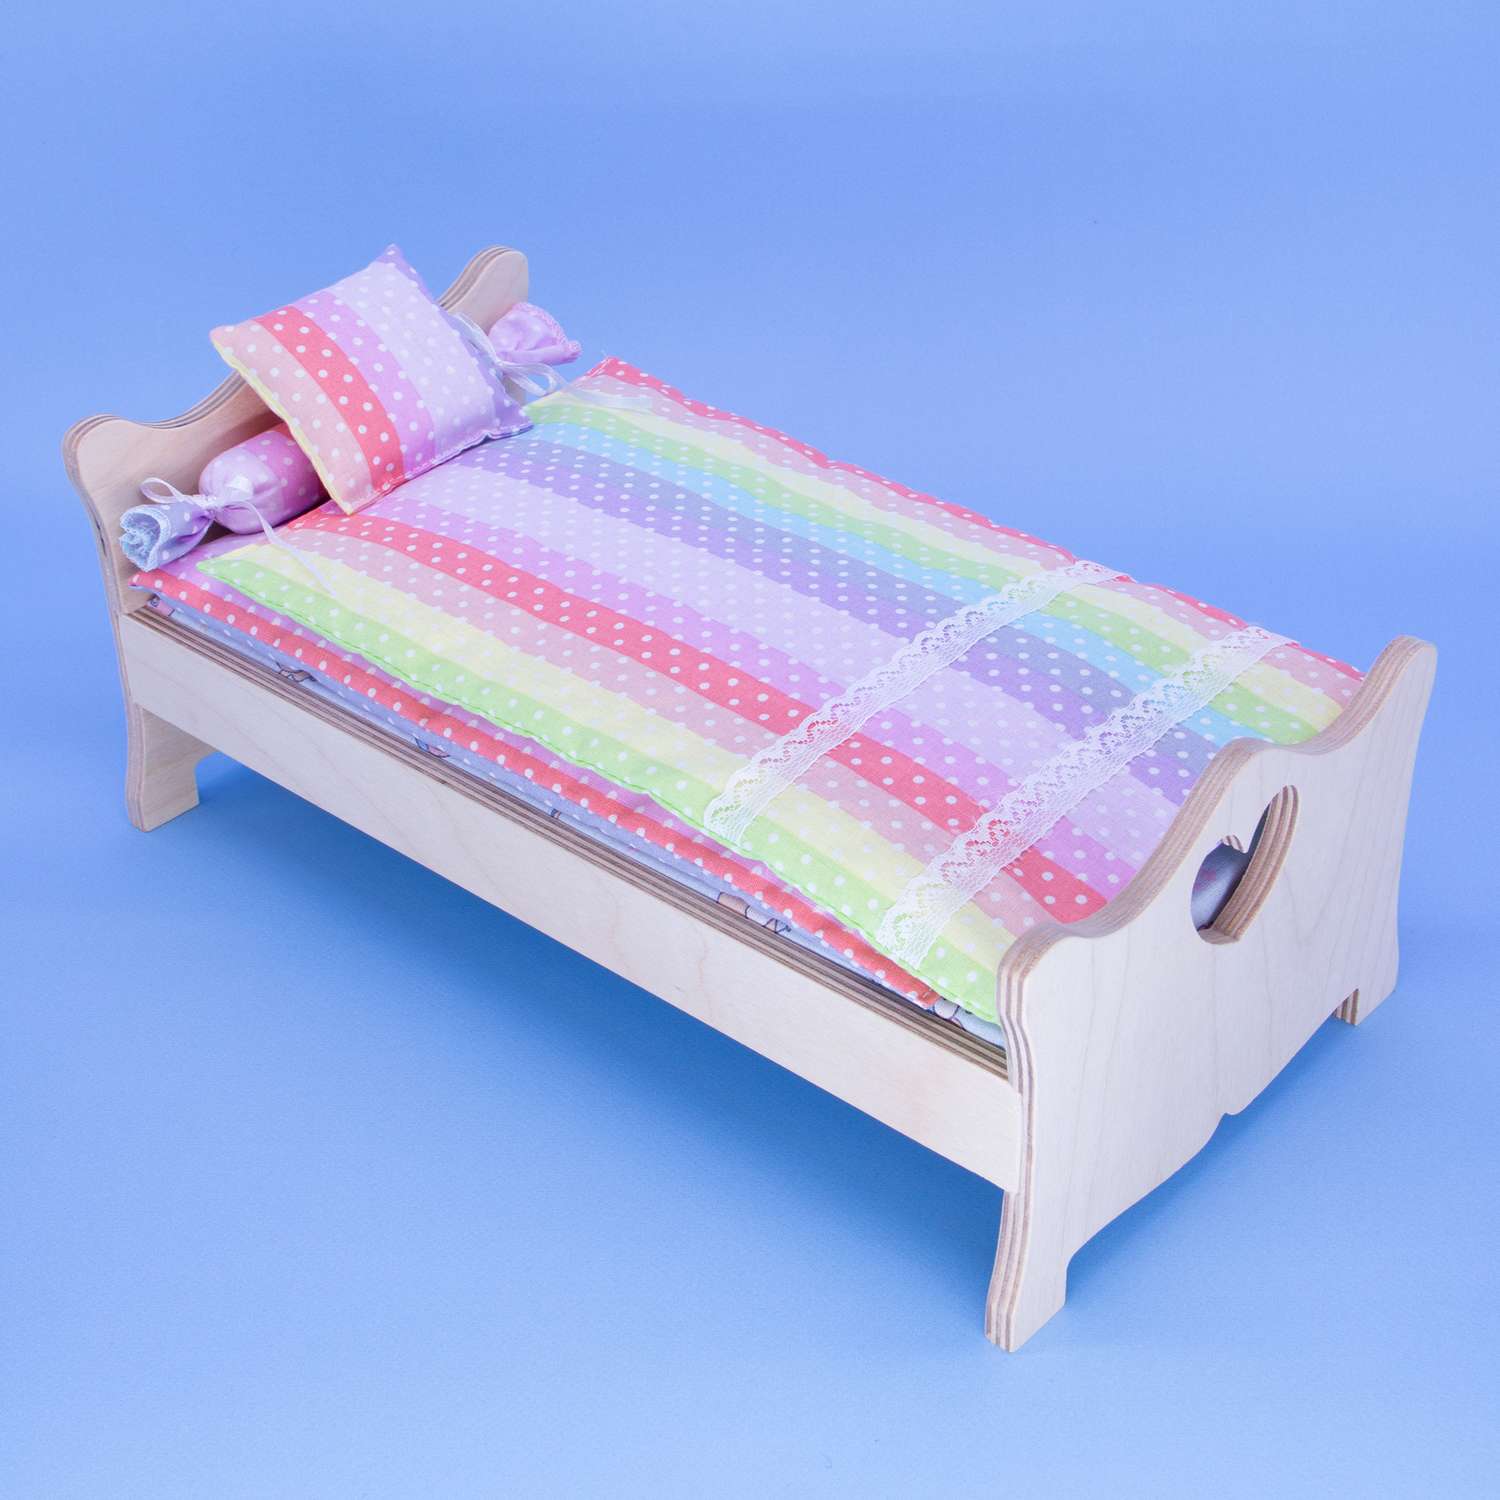 Комлпект постельного белья Модница для куклы 29 см 2002 разноцветный 2002разноцветный - фото 11